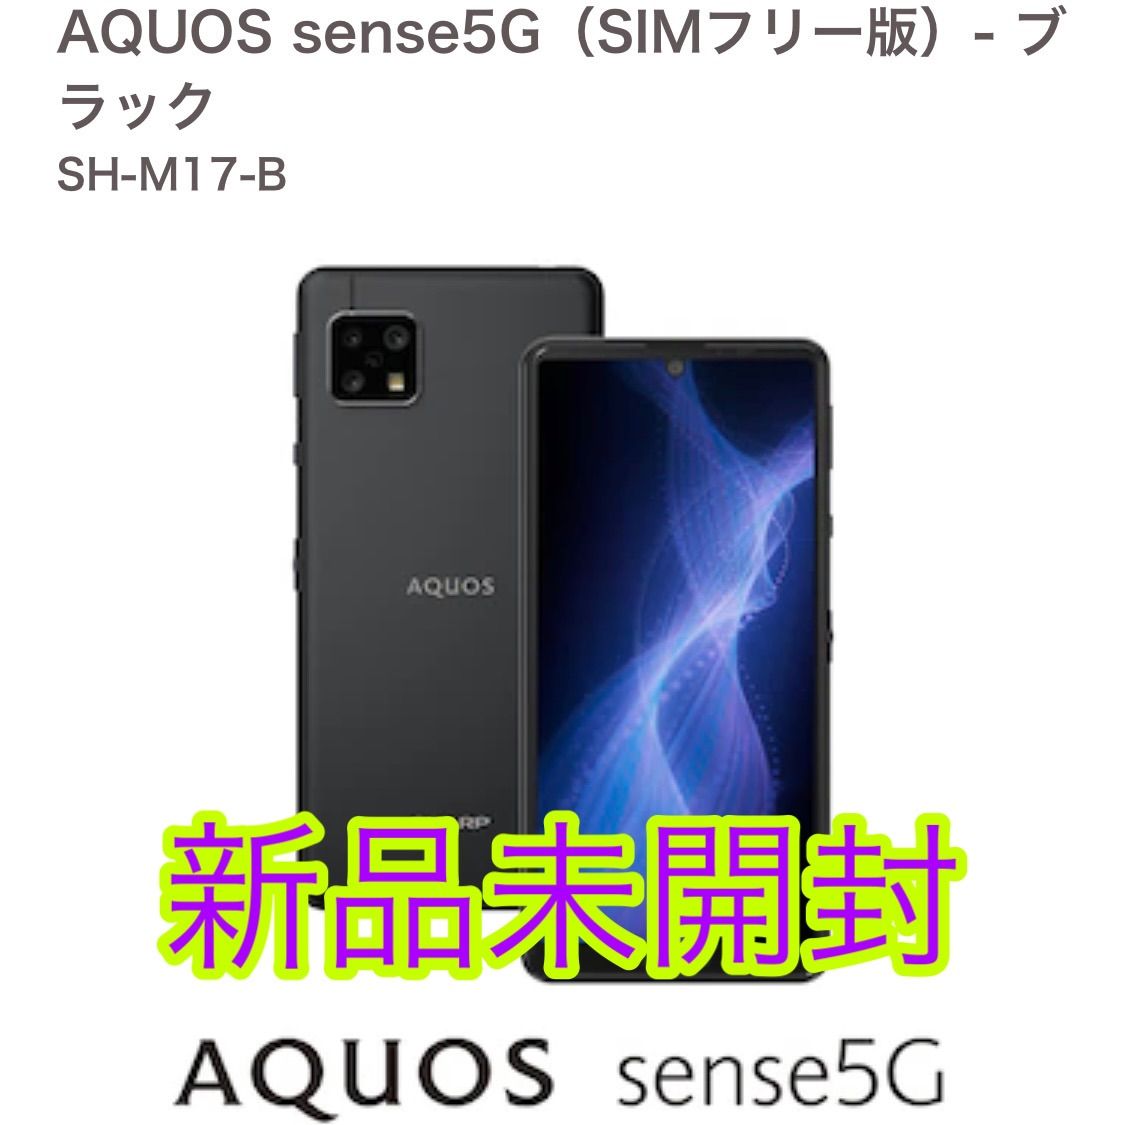 新品未開封・SH-M17-B SHARP AQUOS sense5G - スマートフォン/携帯電話